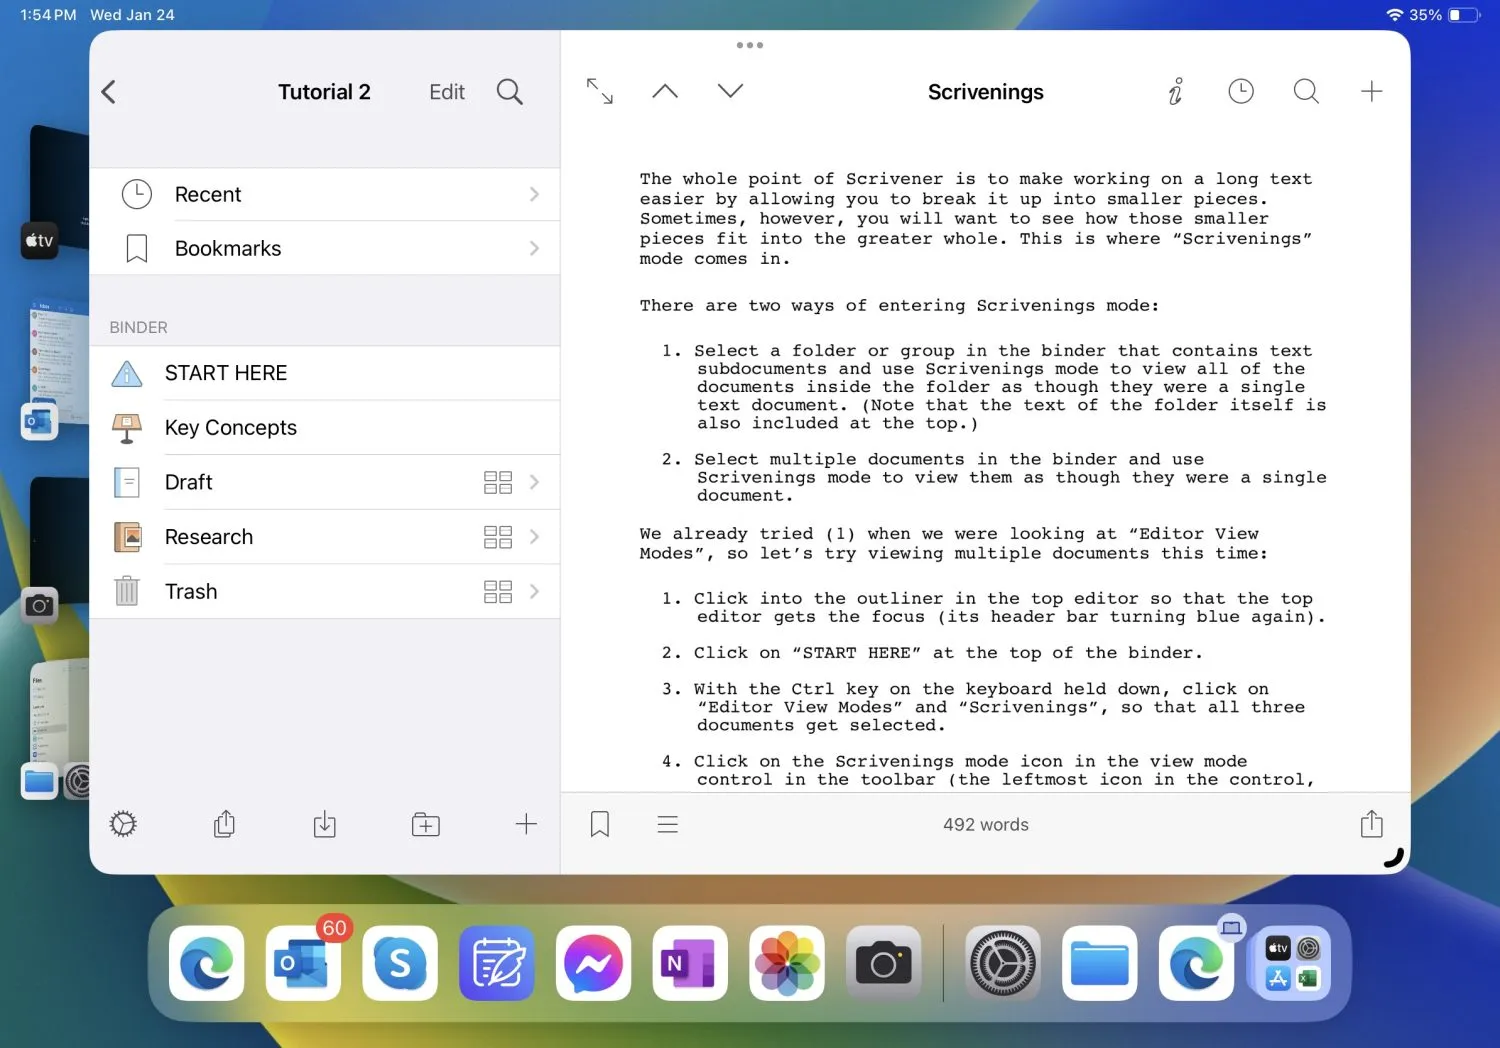 Captura de tela do iPad Pro 11 mostrando o aplicativo Scrivener